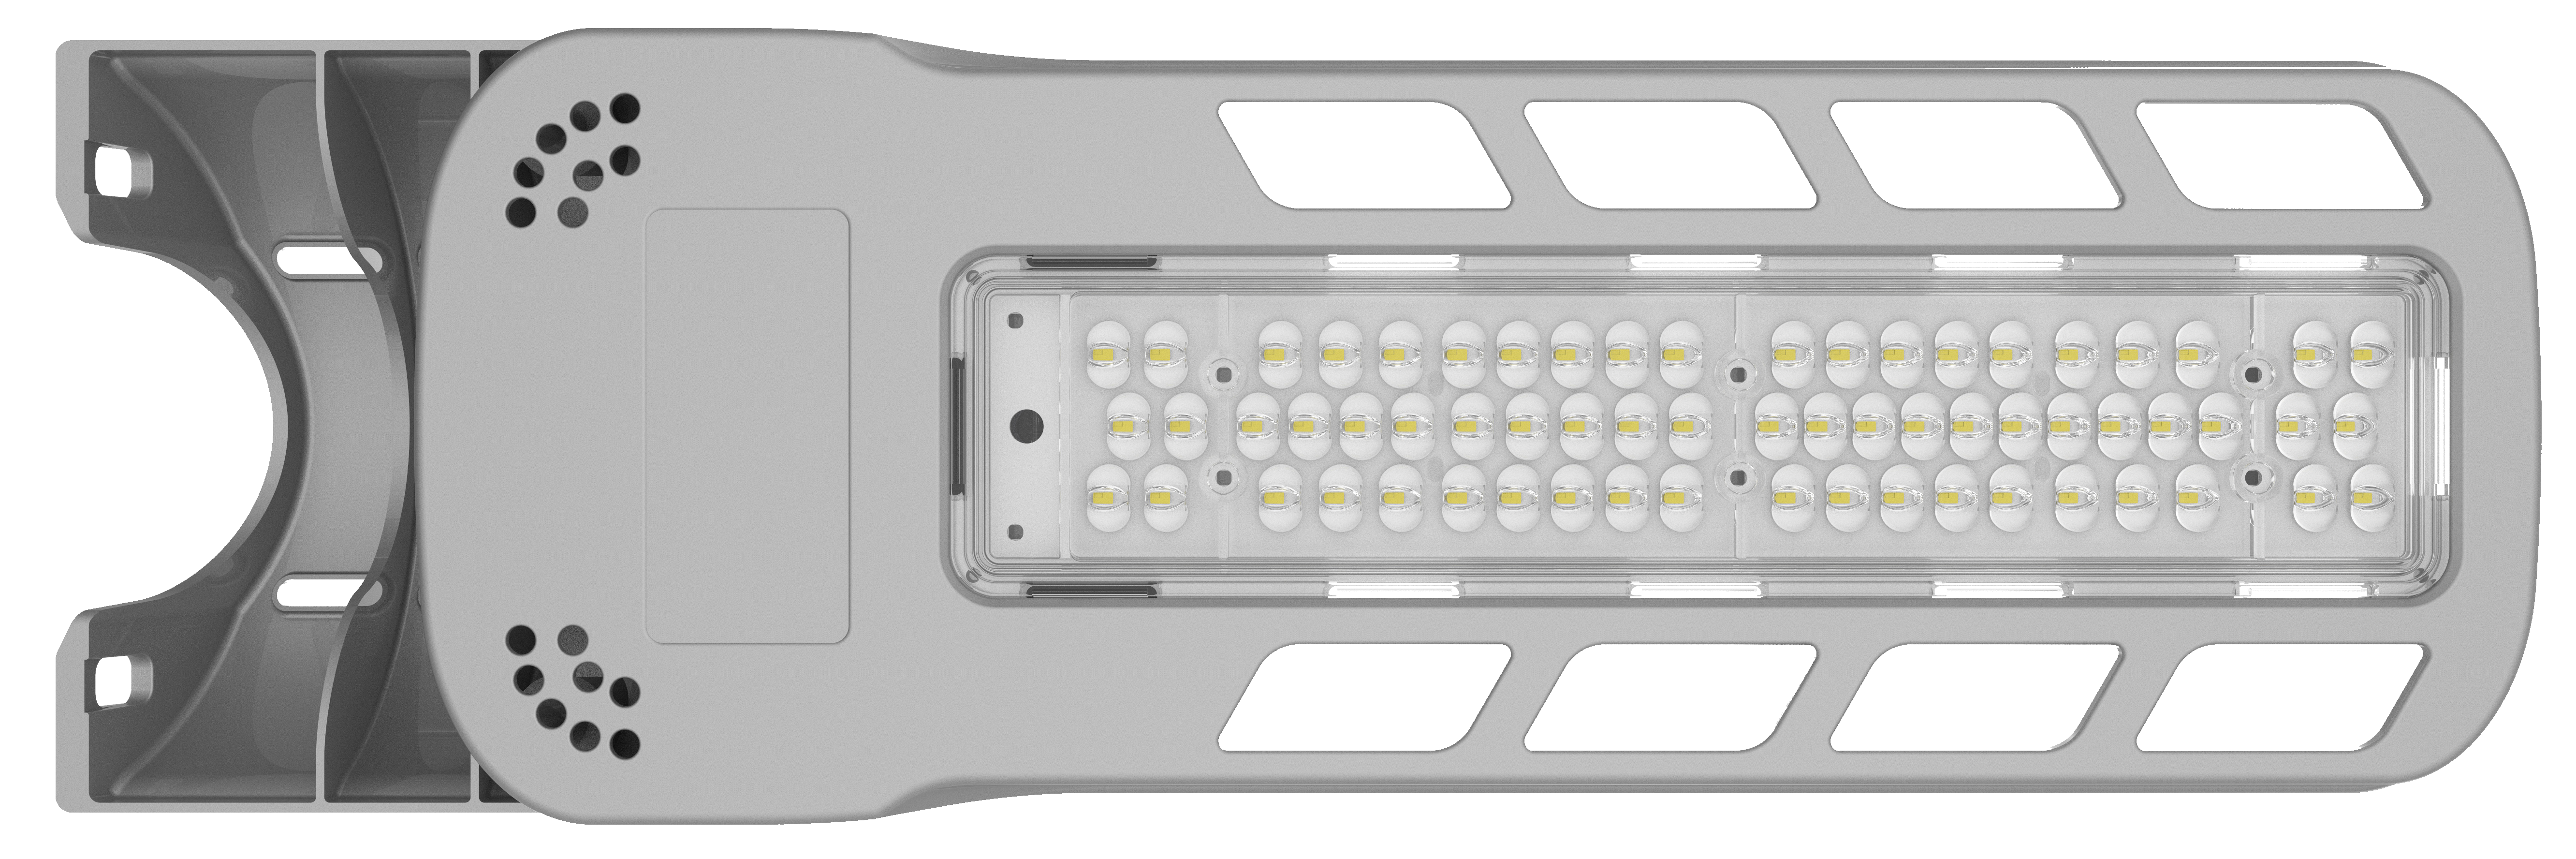 Réverbère LED de type simple série RK 